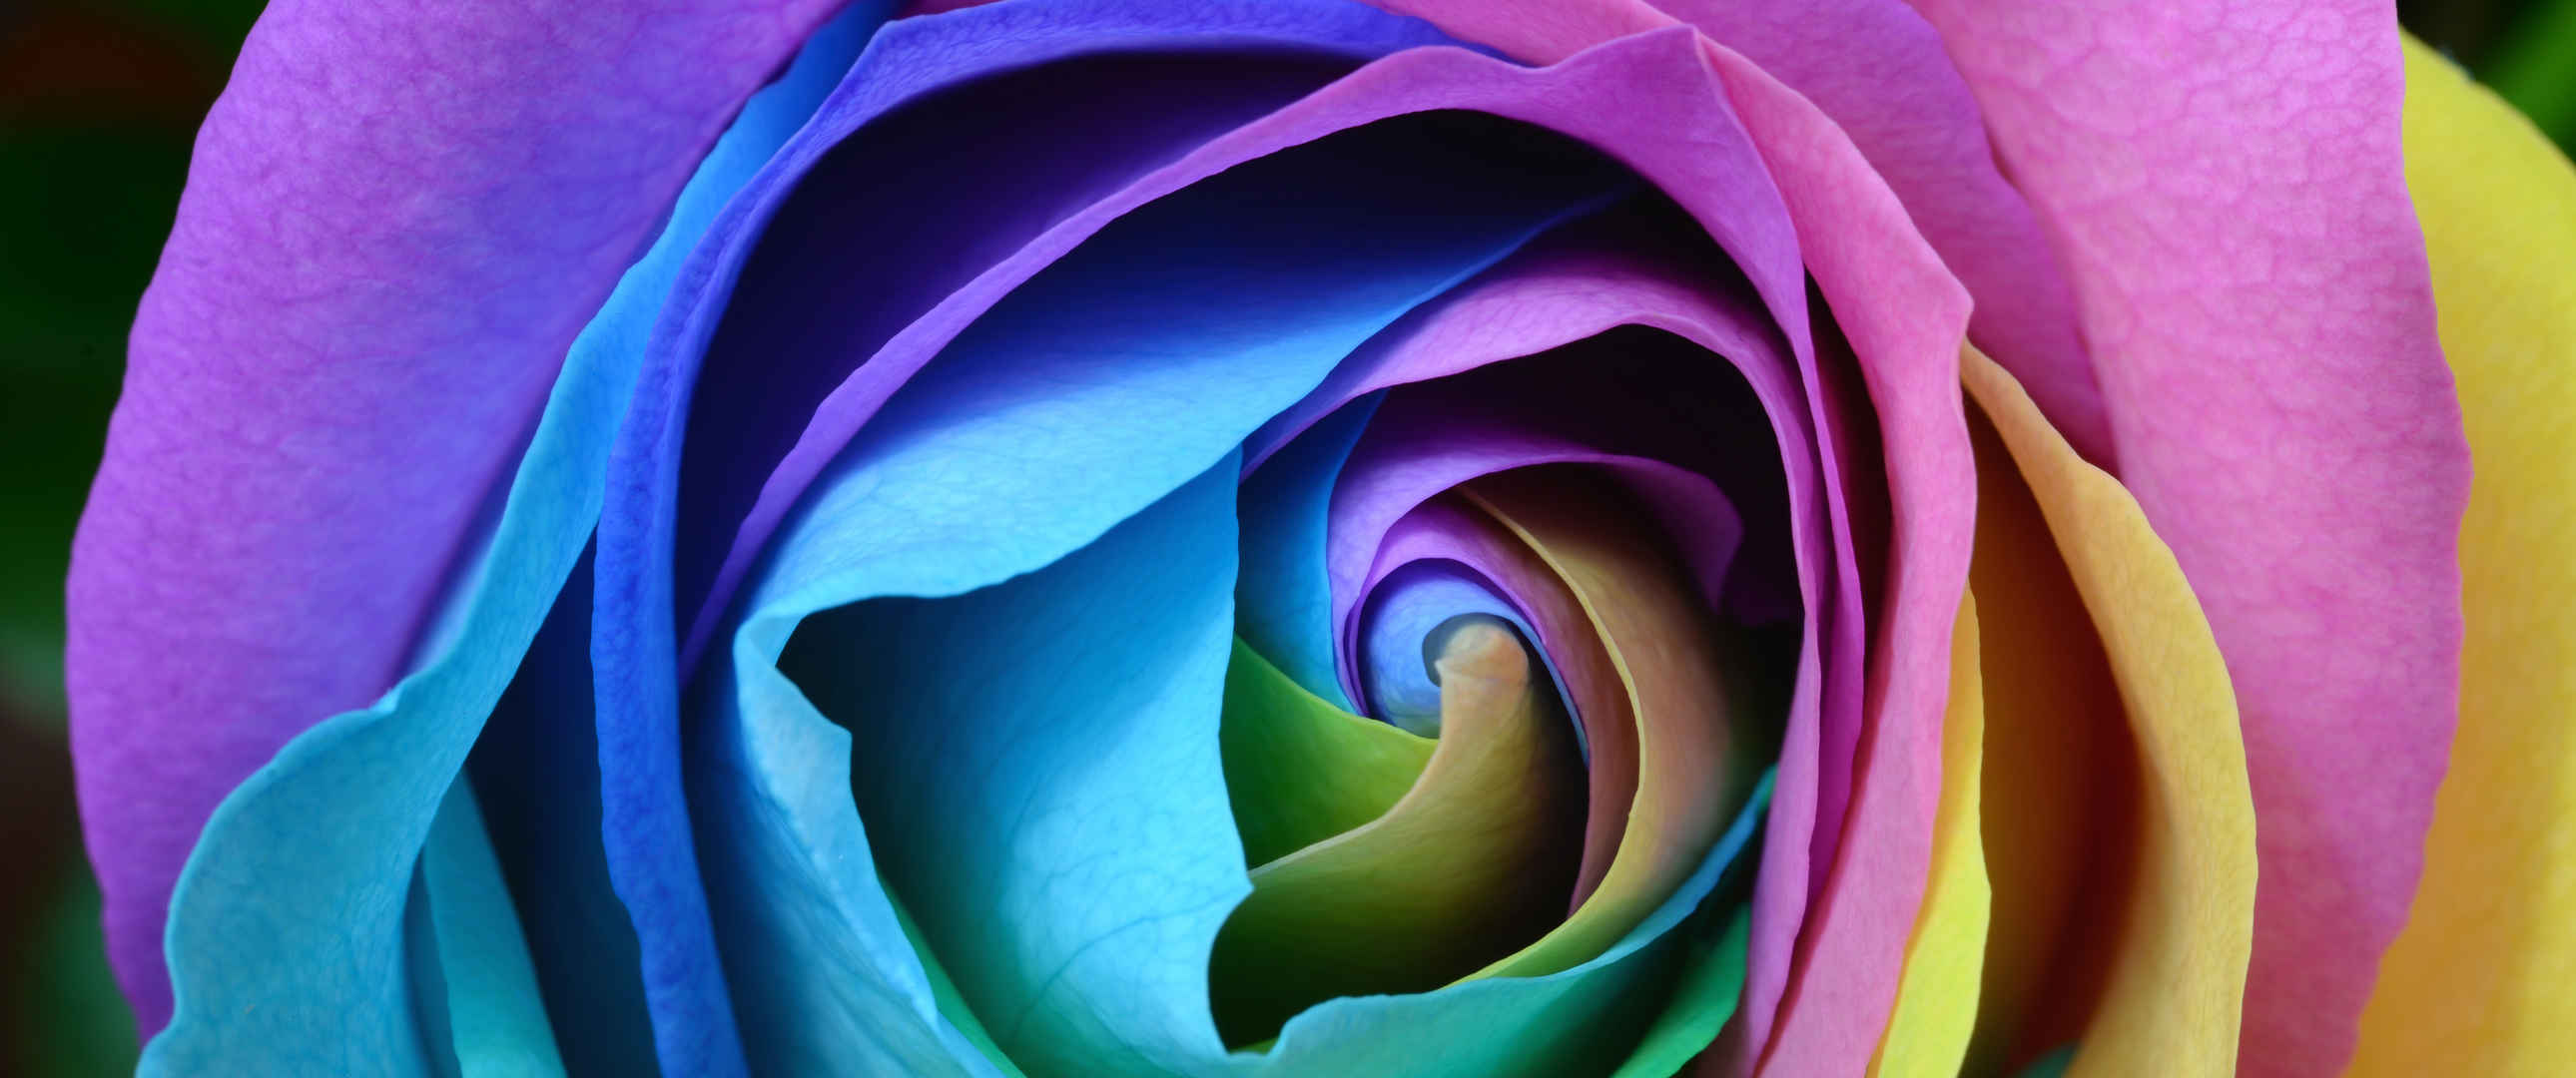 彩色多彩的玫瑰3440x1440壁纸-